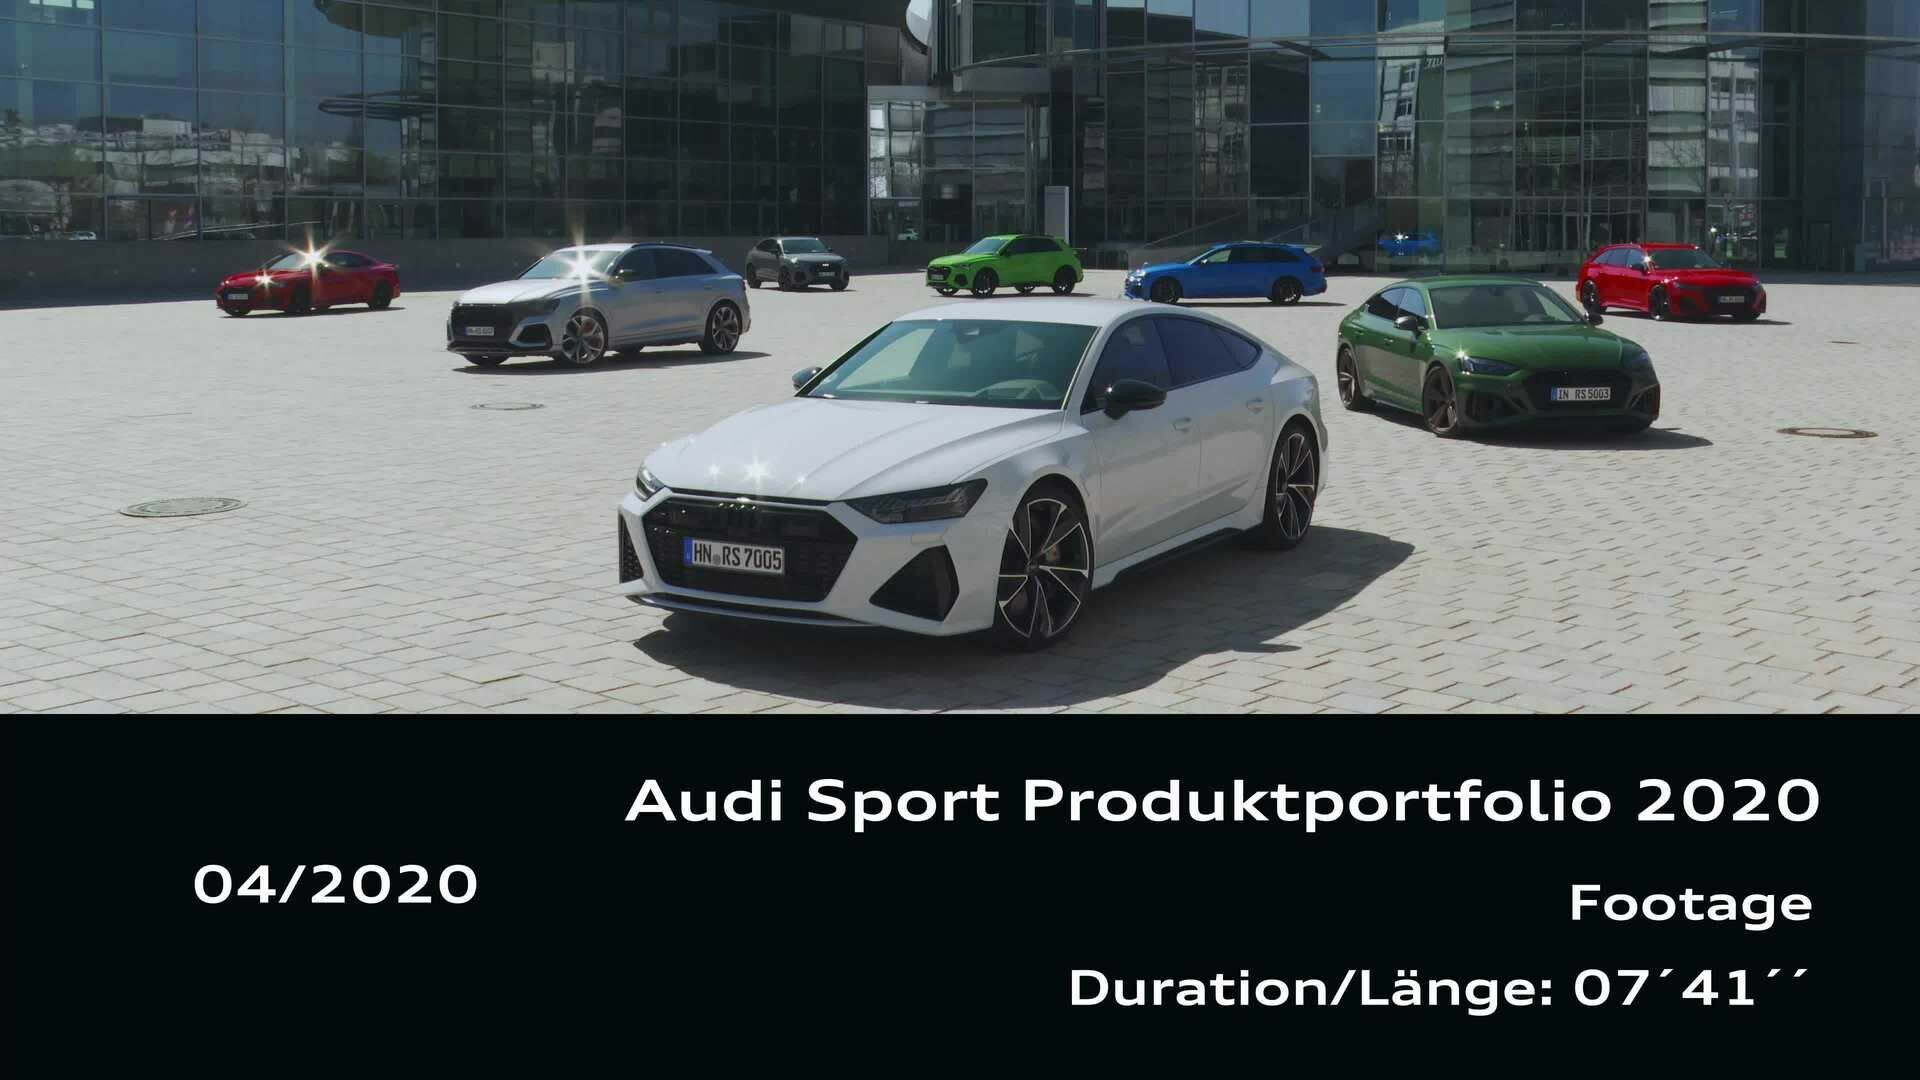 Footage: Audi Sport Produktportfolio 2020